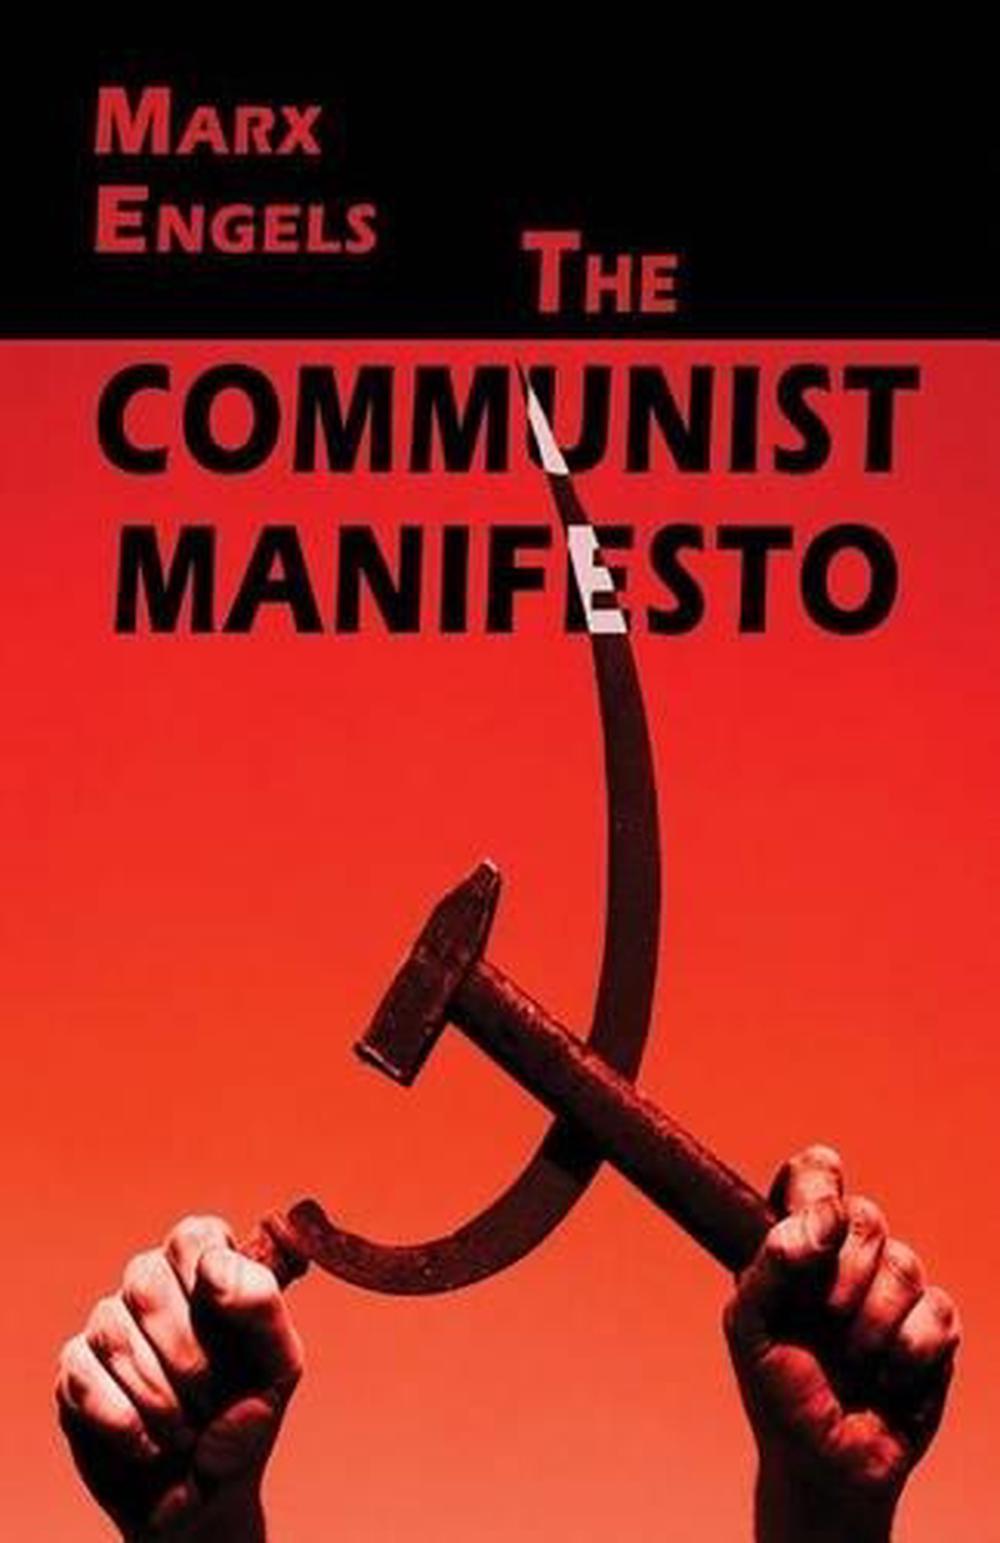 the communist manifesto was written by